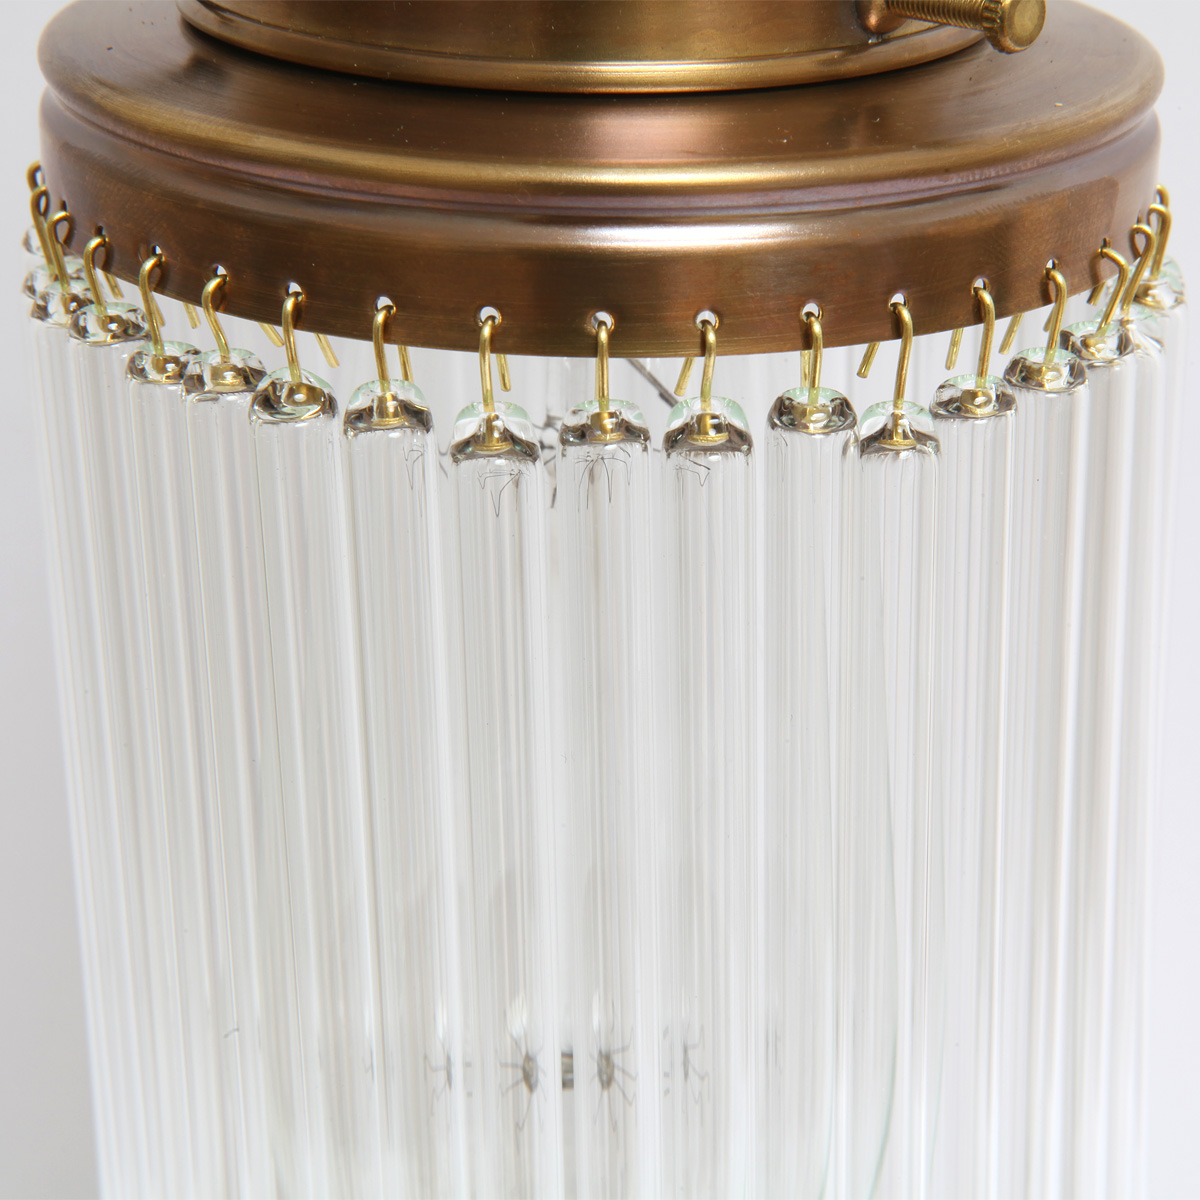 Stile Floreale-Kristallglas-Deckenleuchte VENEZIA 46 x 40 cm: Filigrane Kristall-Glasstäbchen sorgen für eine interessantes Lichtspiel (Ausführung handpatiniert-Altmessing)